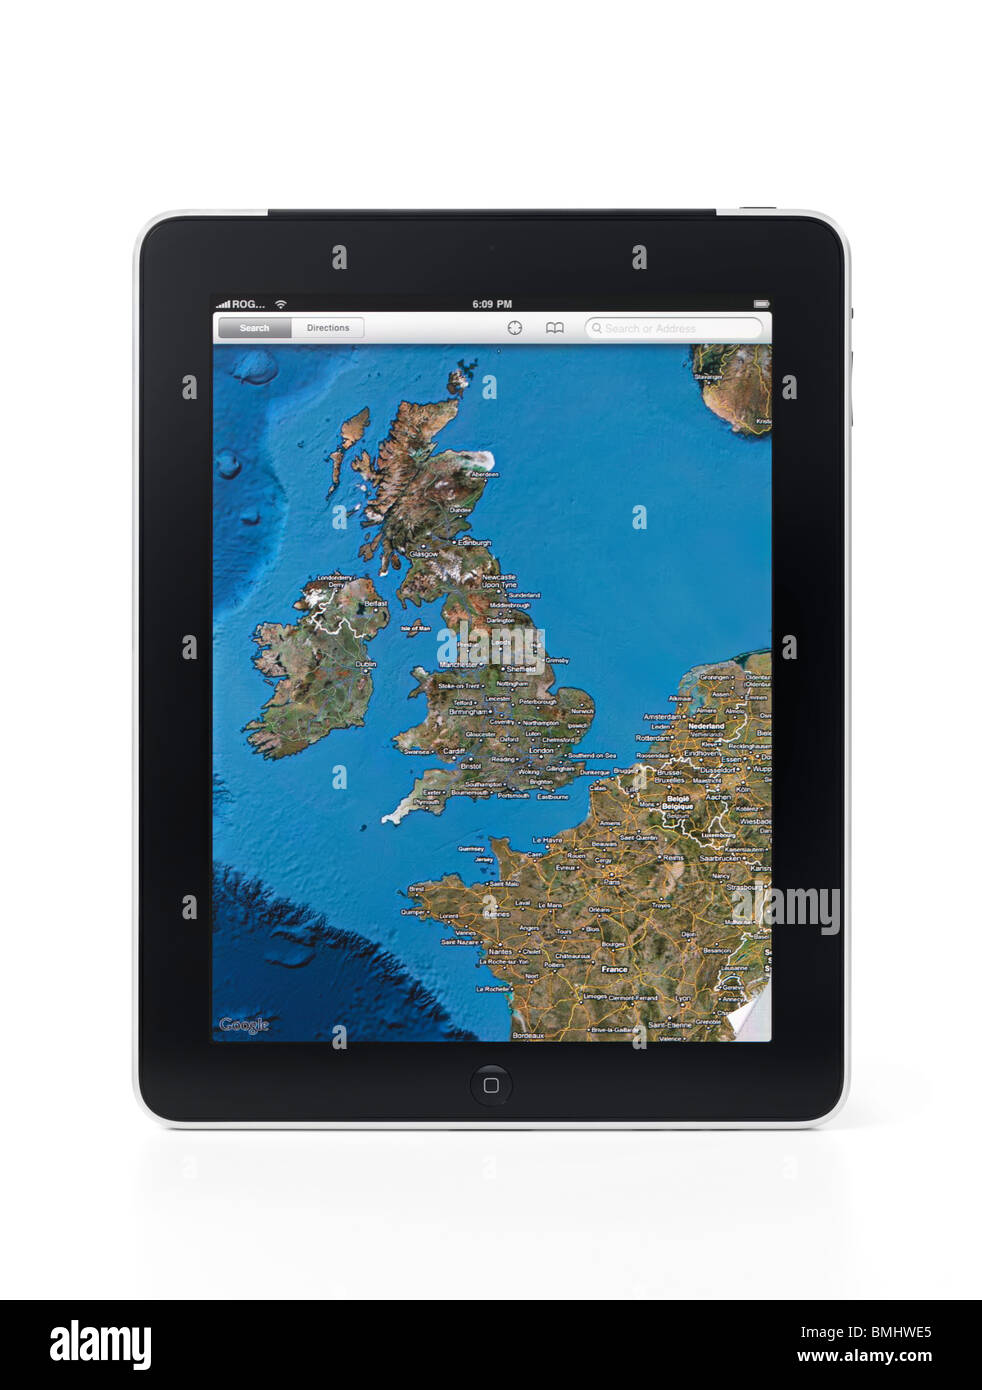 Apple iPad 3G Tablet mit GoogleMaps anzeigen Großbritannien und ein Teil Europas. Isoliert auf weißem Hintergrund mit Beschneidungspfad Stockfoto